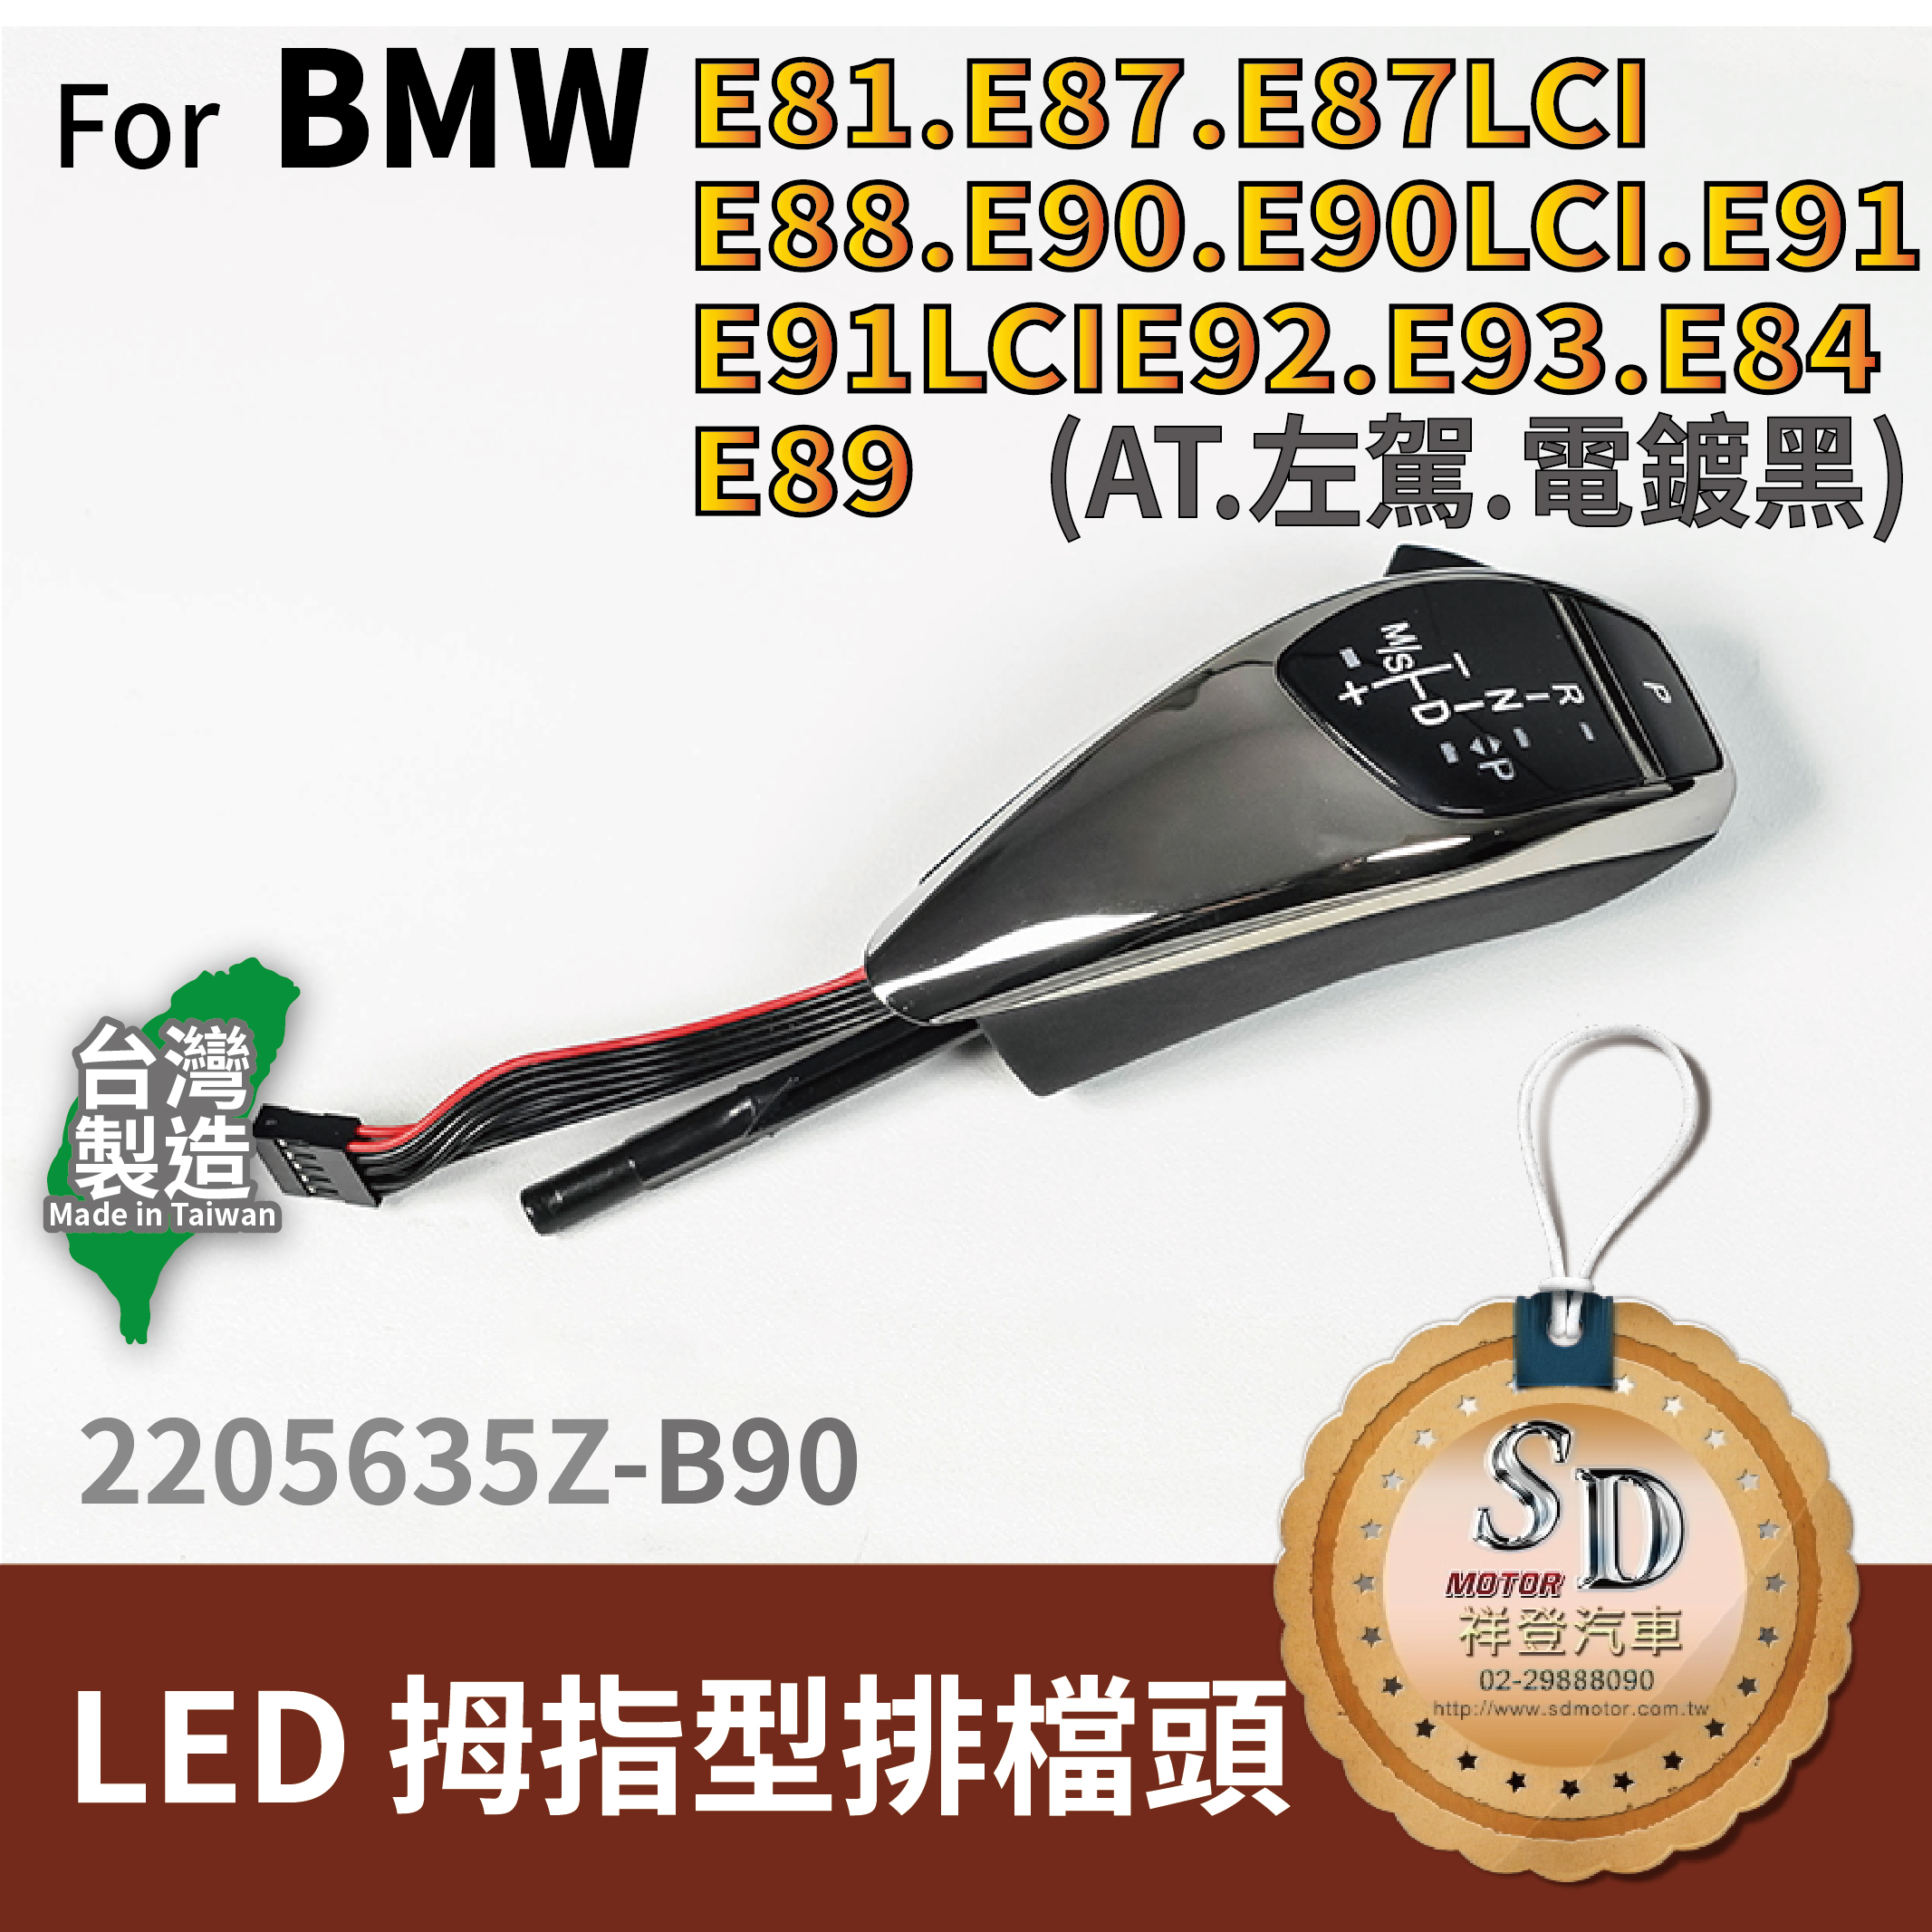 For BMW E81/E82/E84/E87/E88/E89/E90/E91/E92/E93  LED 拇指型排檔頭 A/T，左駕，電鍍黑，無警示燈